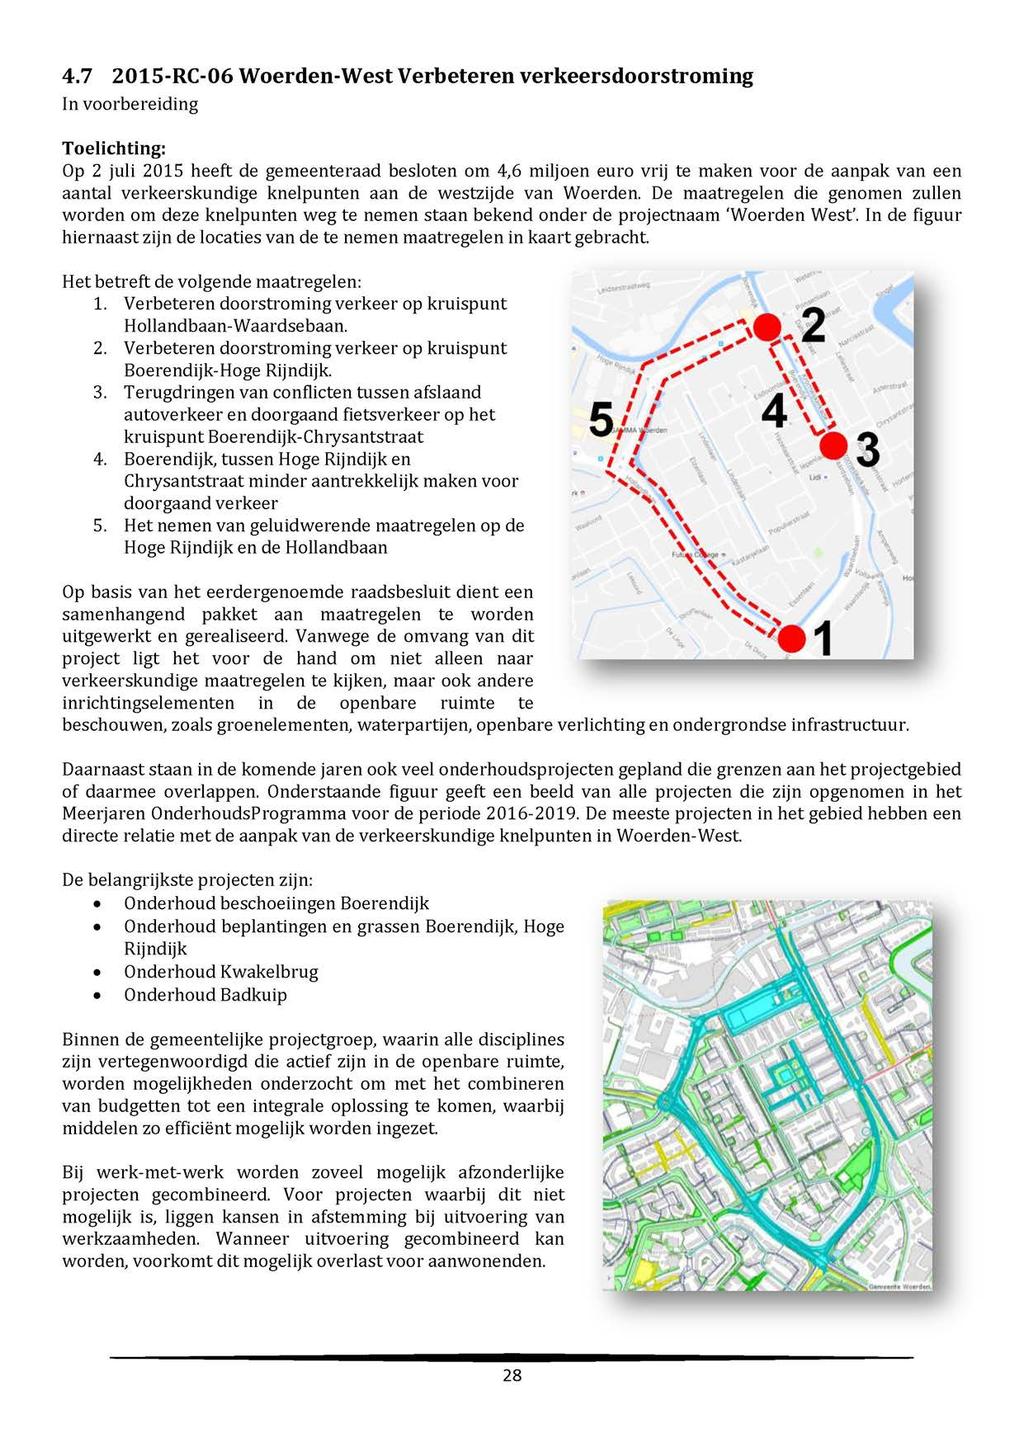 4.7 2015-RC-06 Woerden-West Verbeteren verkeersdoorstroming In voorbereiding Toelichting: Op 2 juli 2015 heeft de gemeenteraad besloten om 4,6 miljoen euro vrij te maken voor de aanpak van een aantal